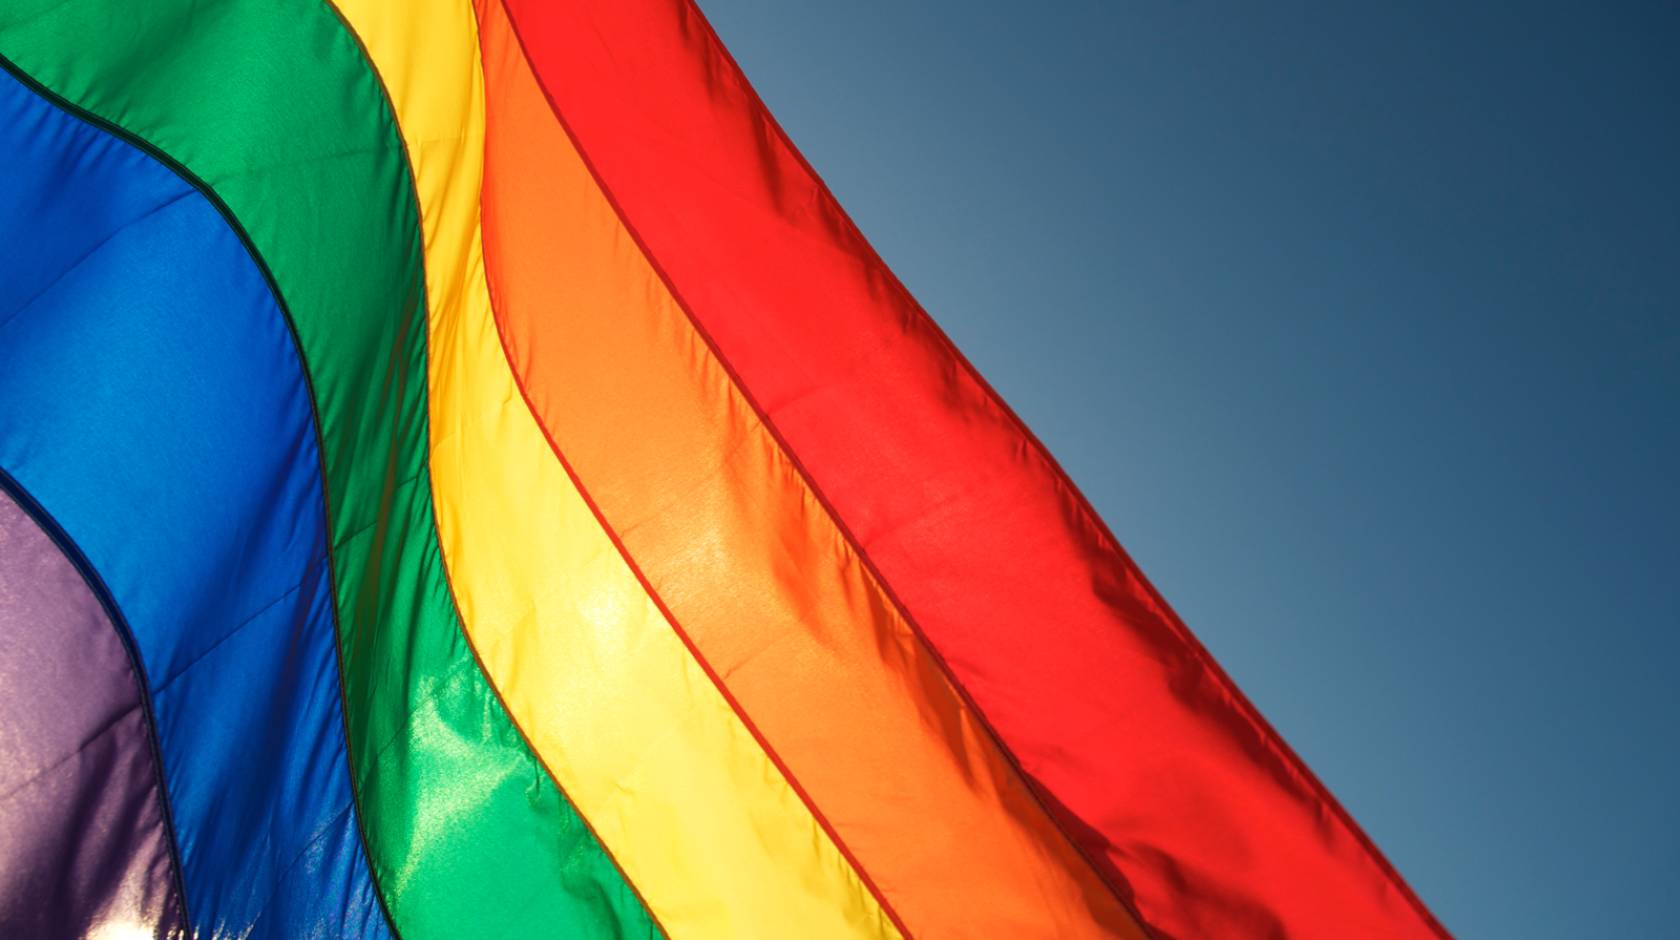 Rainbow flag, Pride flag